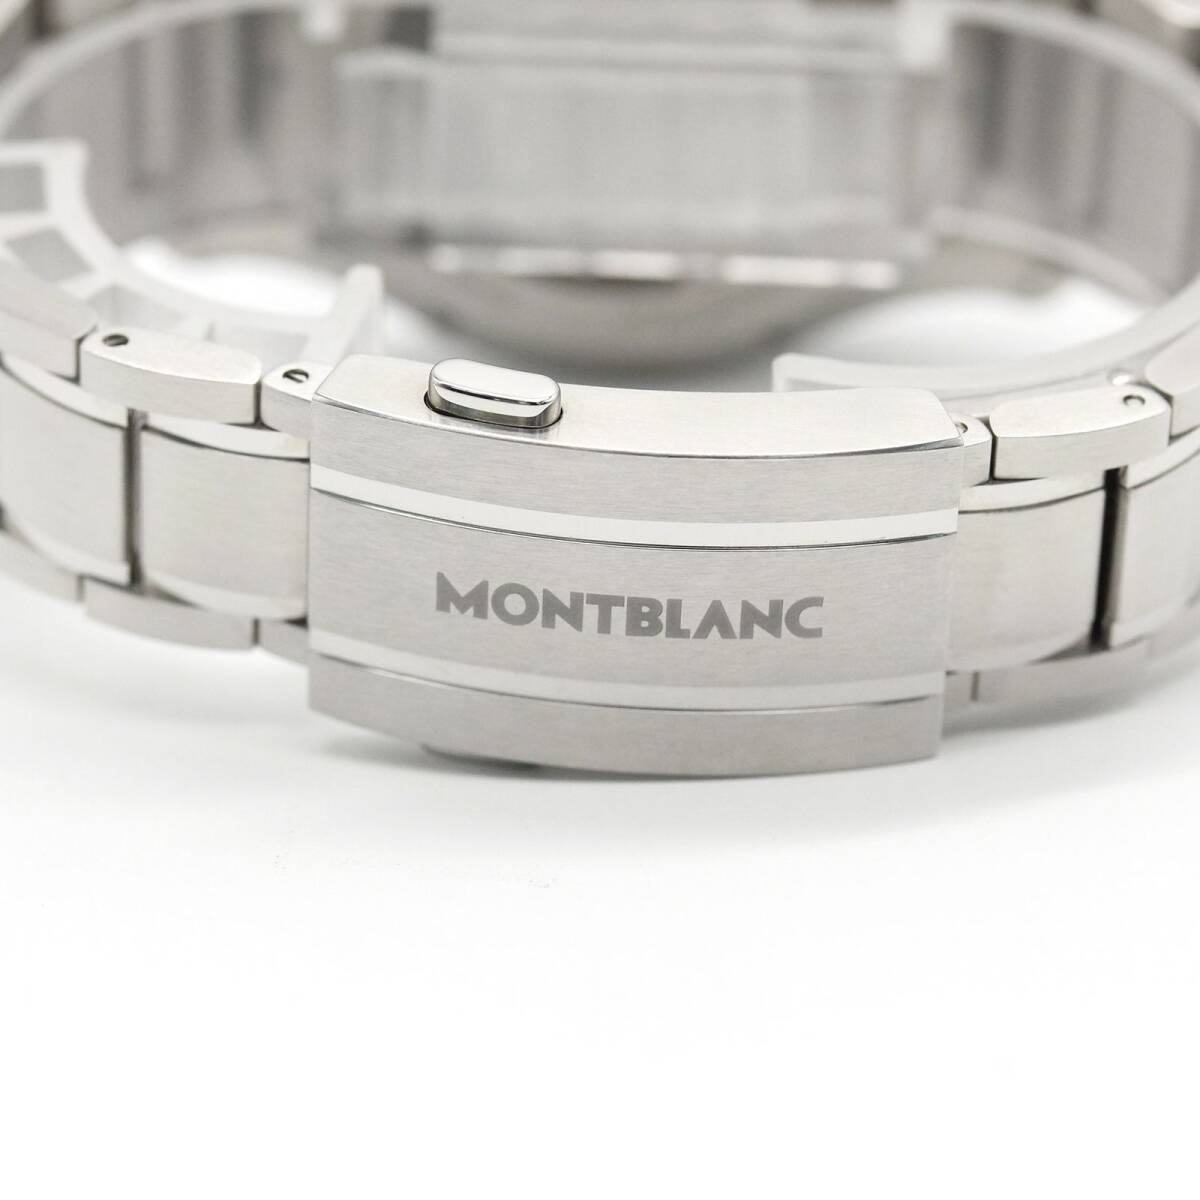 [ почти не использовался товар ] Montblanc MONTBLANC 1858 лёд si- серый автомобиль - образец циферблат наручные часы самозаводящиеся часы мужской A03939